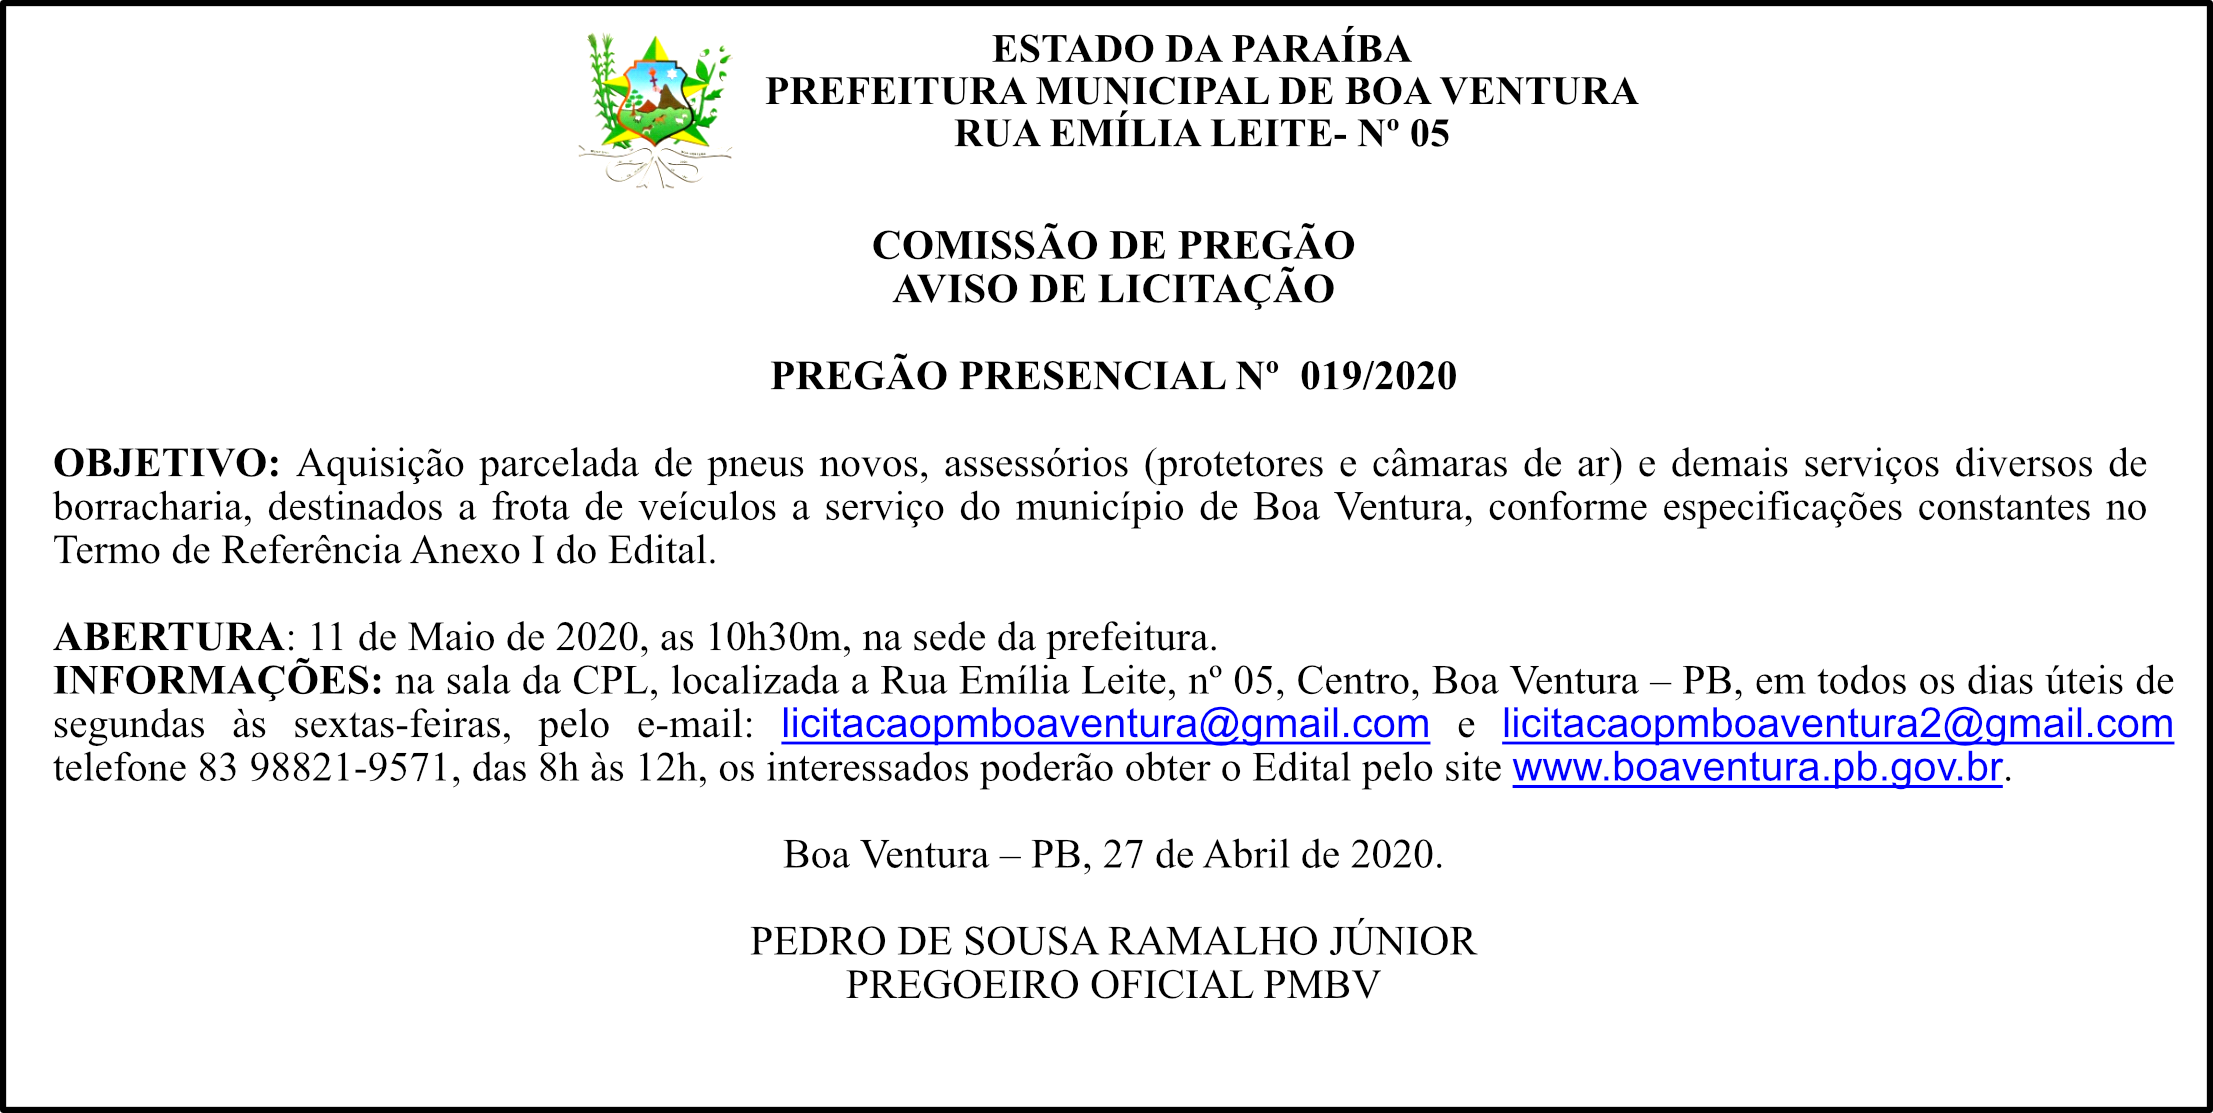 PREFEITURA DE BOA VENTURA – AVISO DE LICITAÇÃO – PREGÃO PRESENCIAL Nº 019/2020